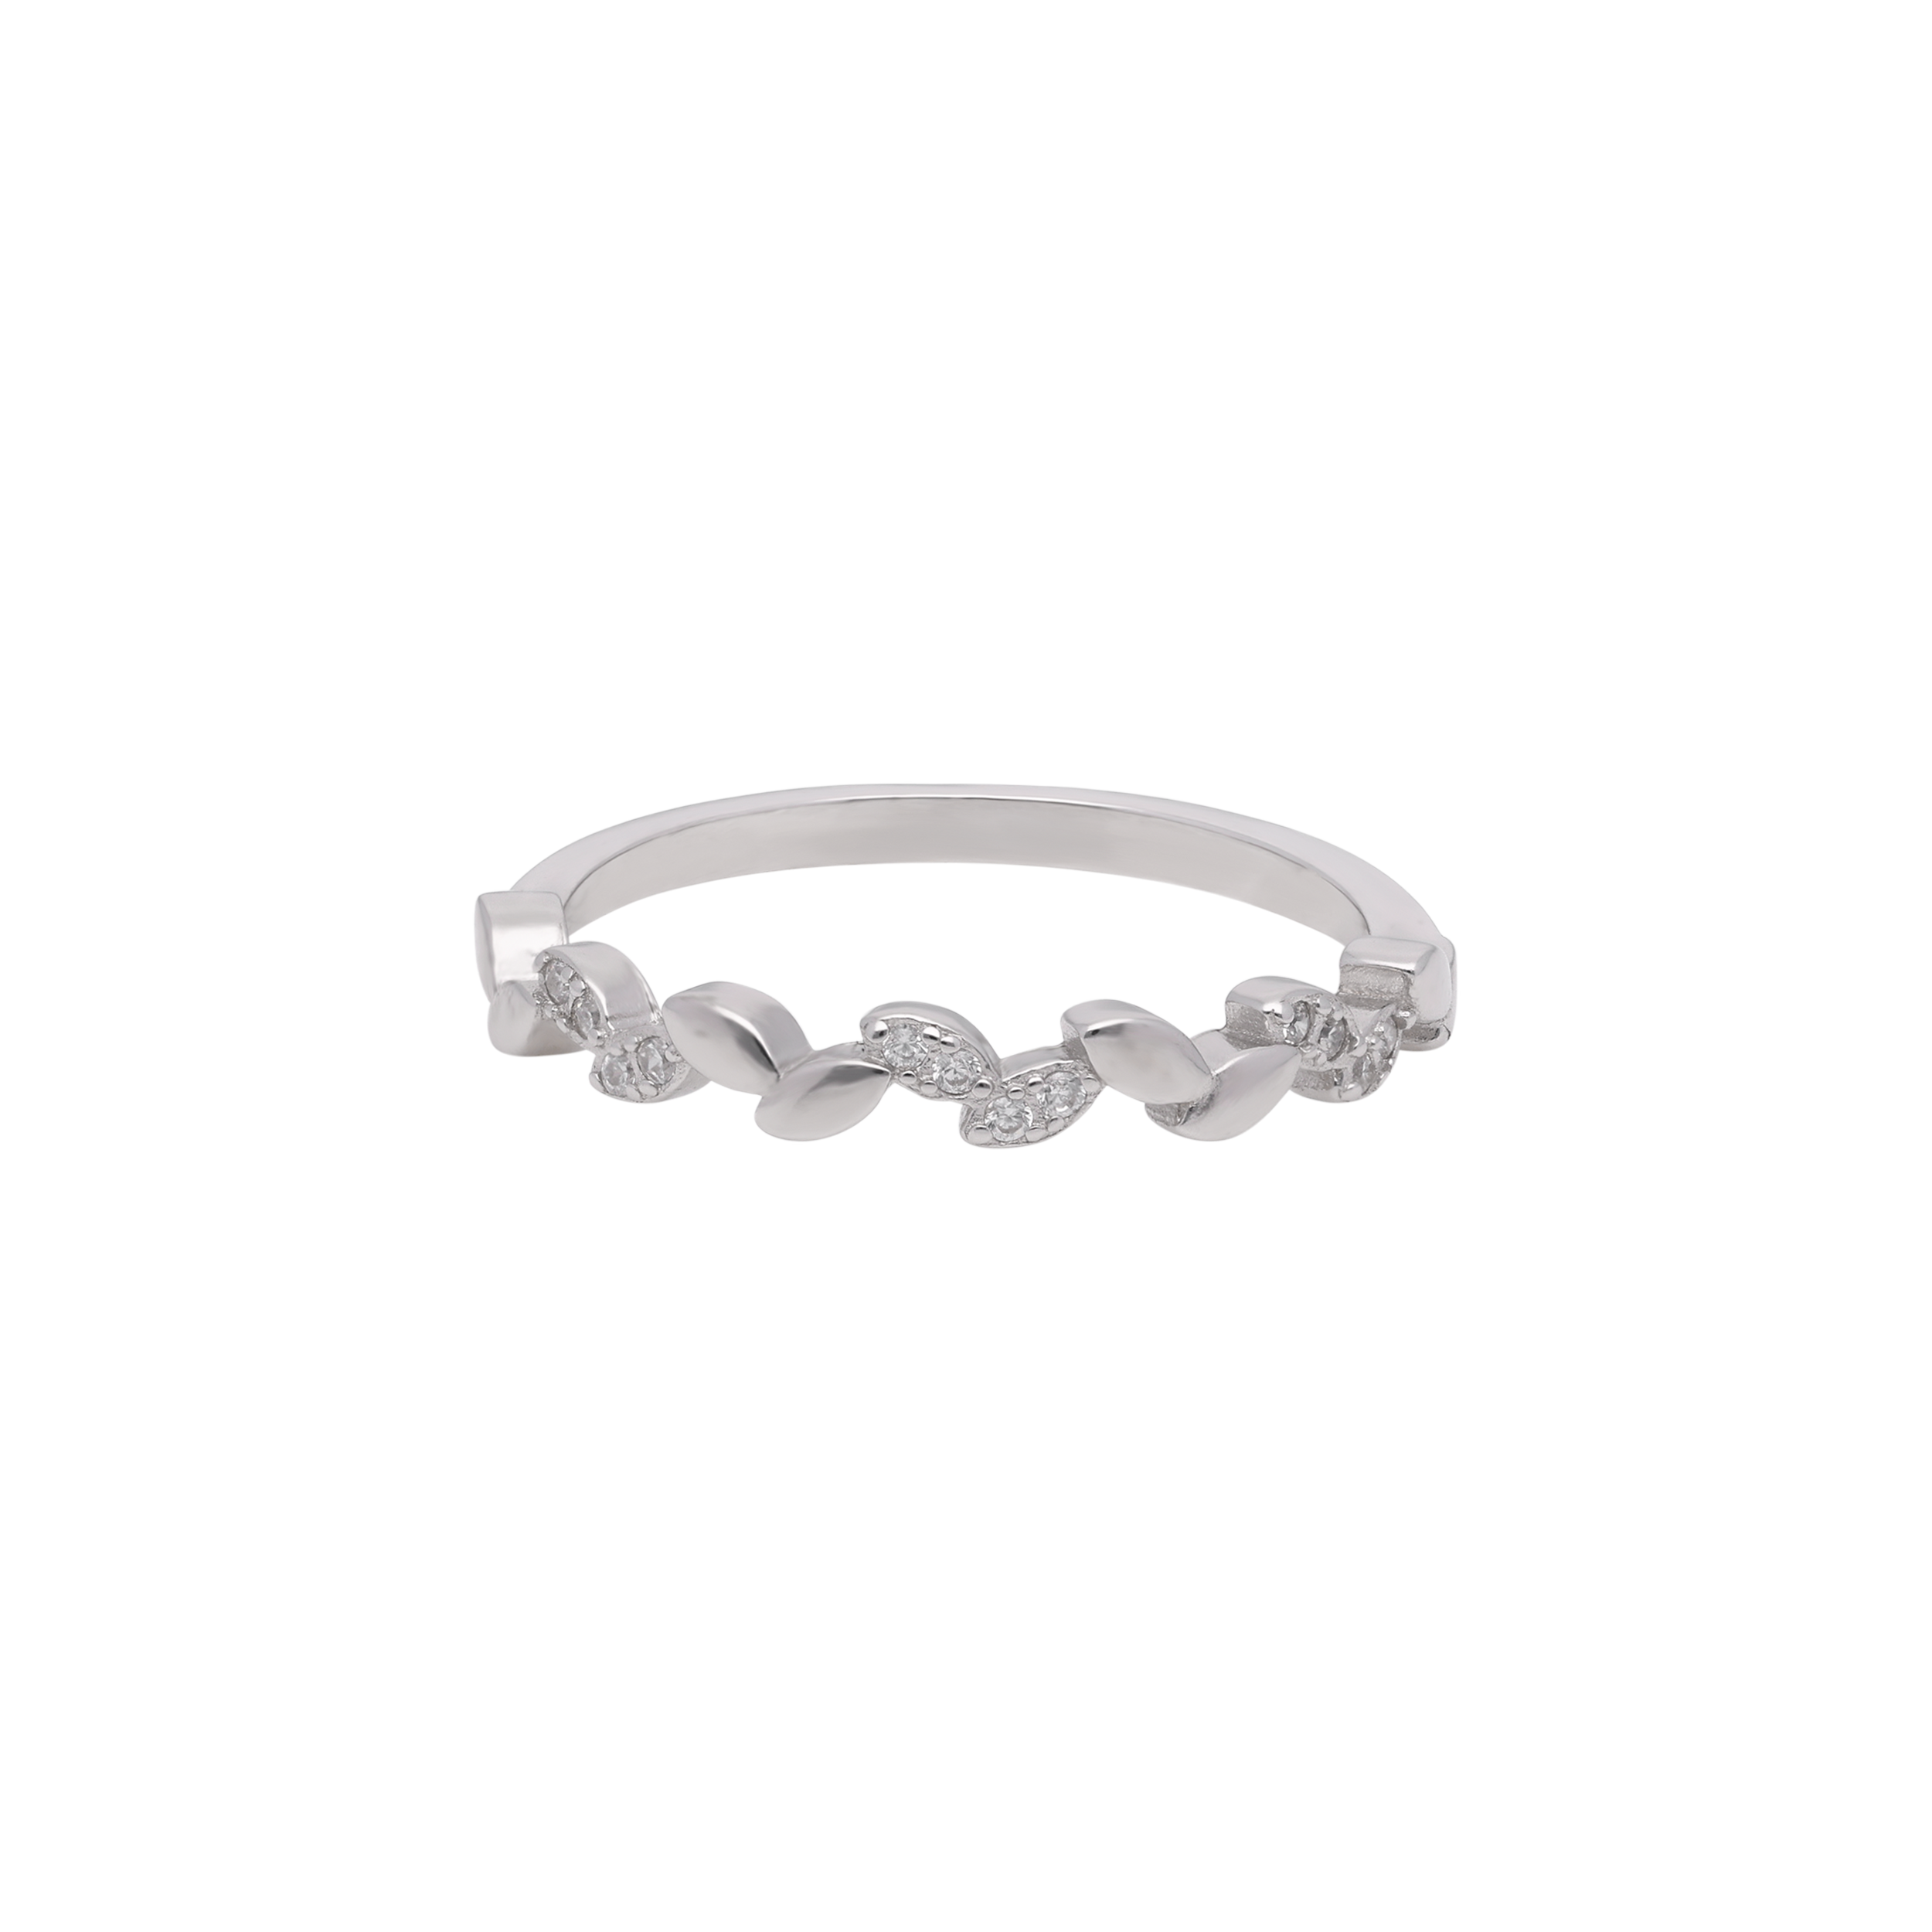 Nature's Elegance: Leaf Design Sterling Silver Band Ring | SKU : 0019798981, 0019799025, 0019798974, 0019798998, 0019799001, 0019798967, 0019799018, 0019798950